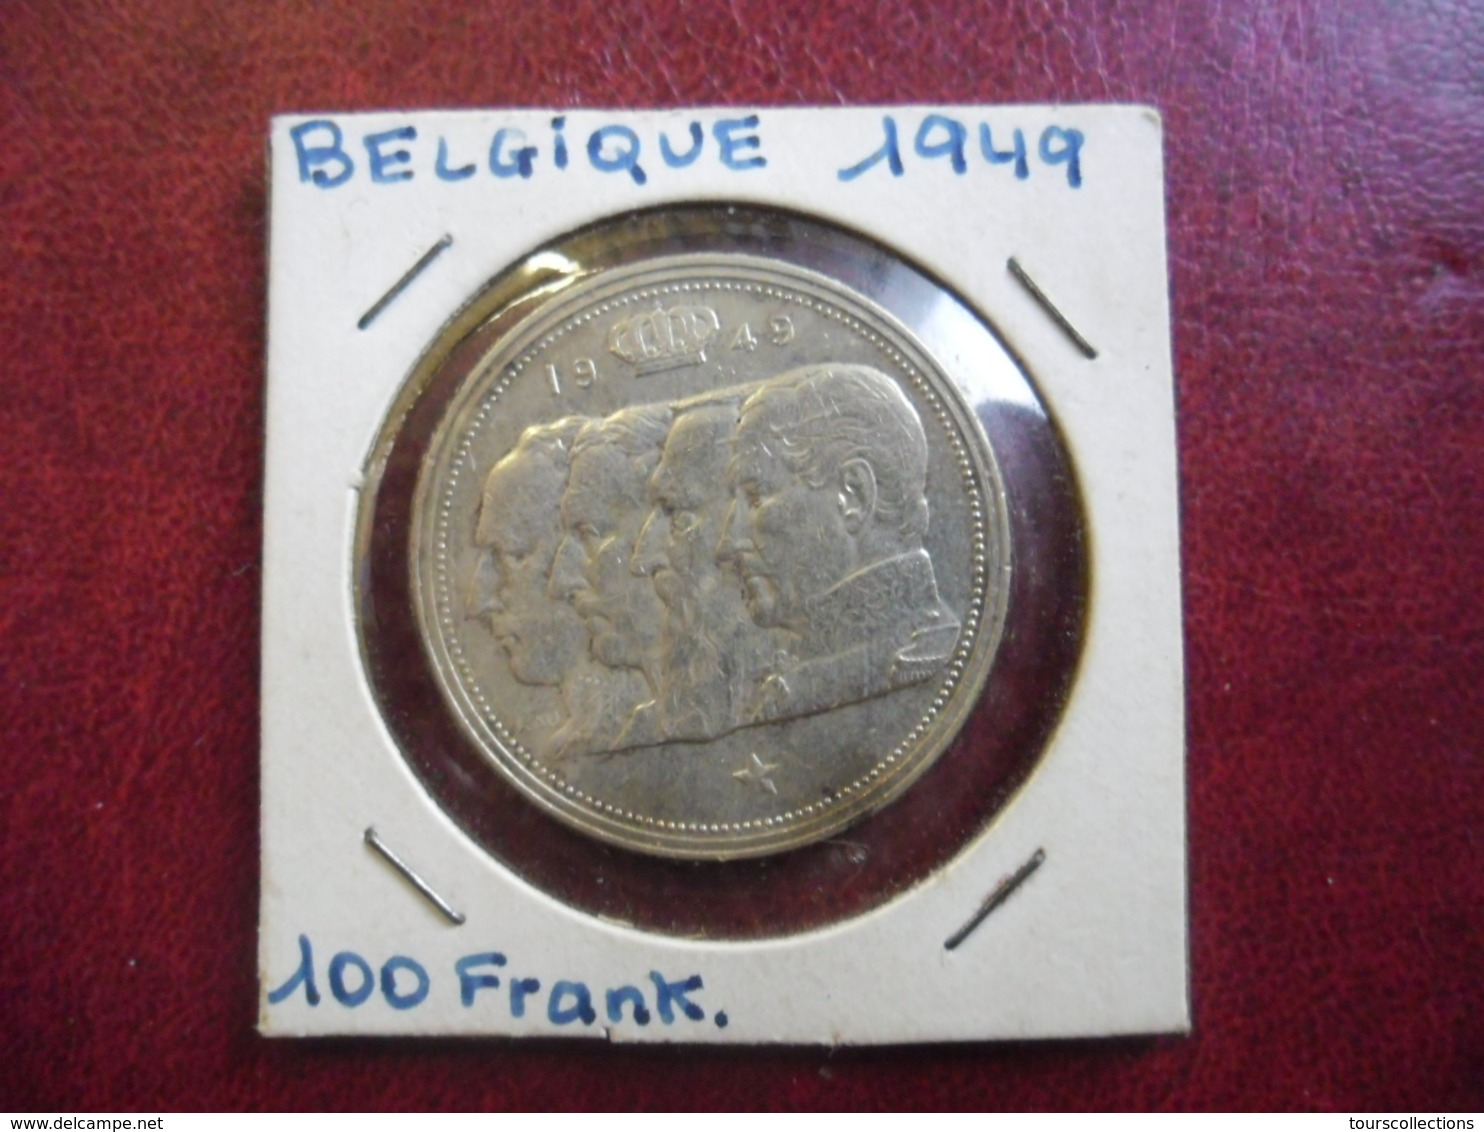 BELGIQUE - 100 FRANCS En Argent 18 Gr. De 1949 - Léopold III (4 Rois Belge) @ KM# 139.1 Frappe Monnaie - 100 Franc